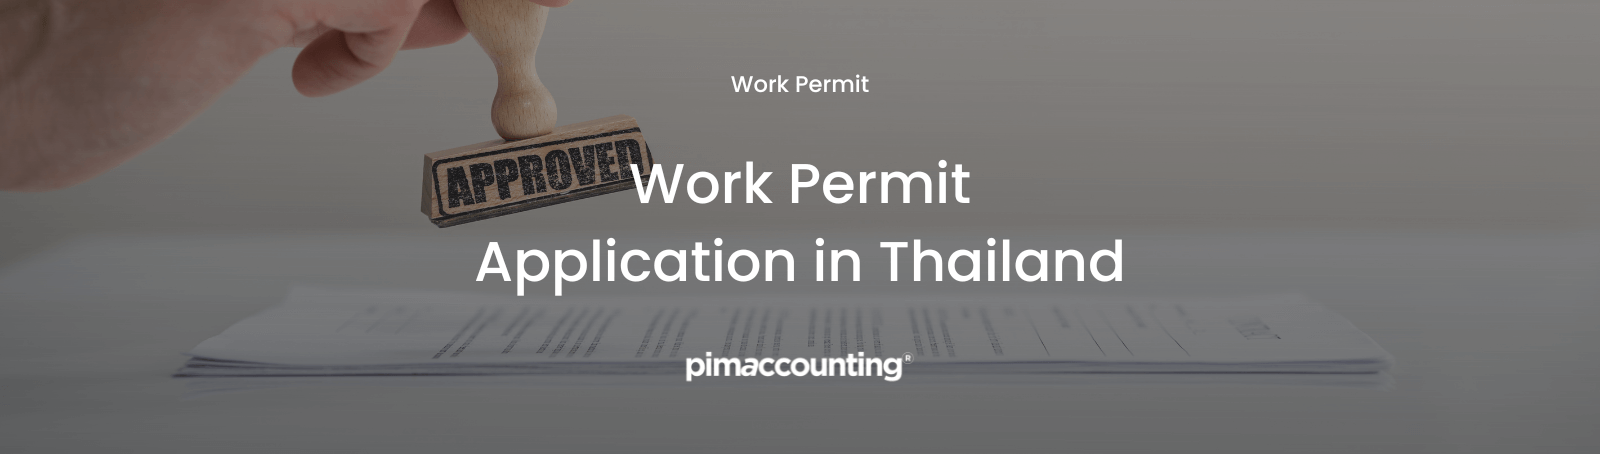 Work Permit Application in Thailand